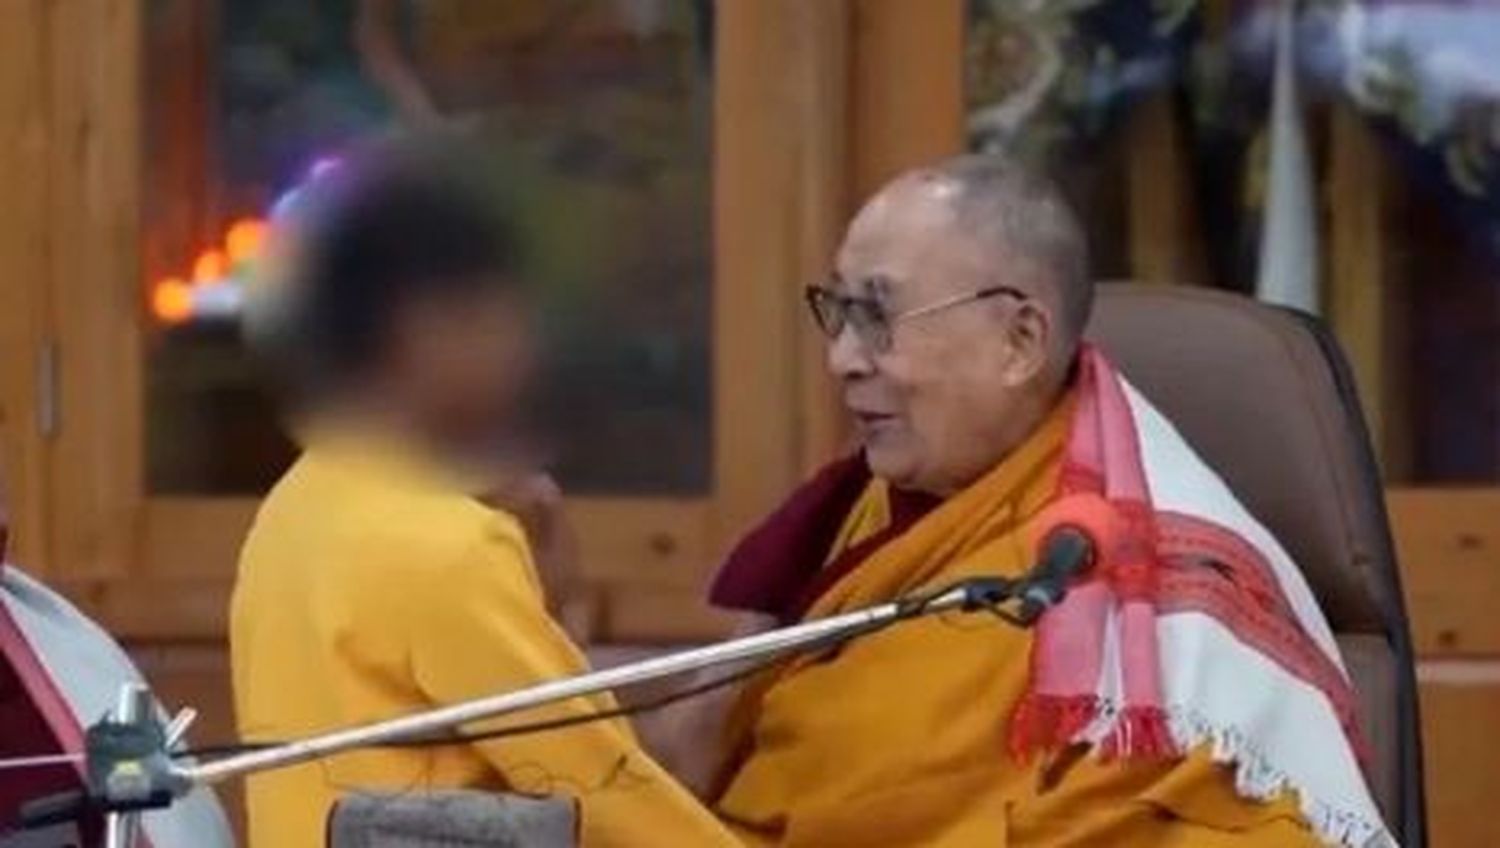 Habló el nene que Dalai Lama besó y quiso que le chupara la lengua